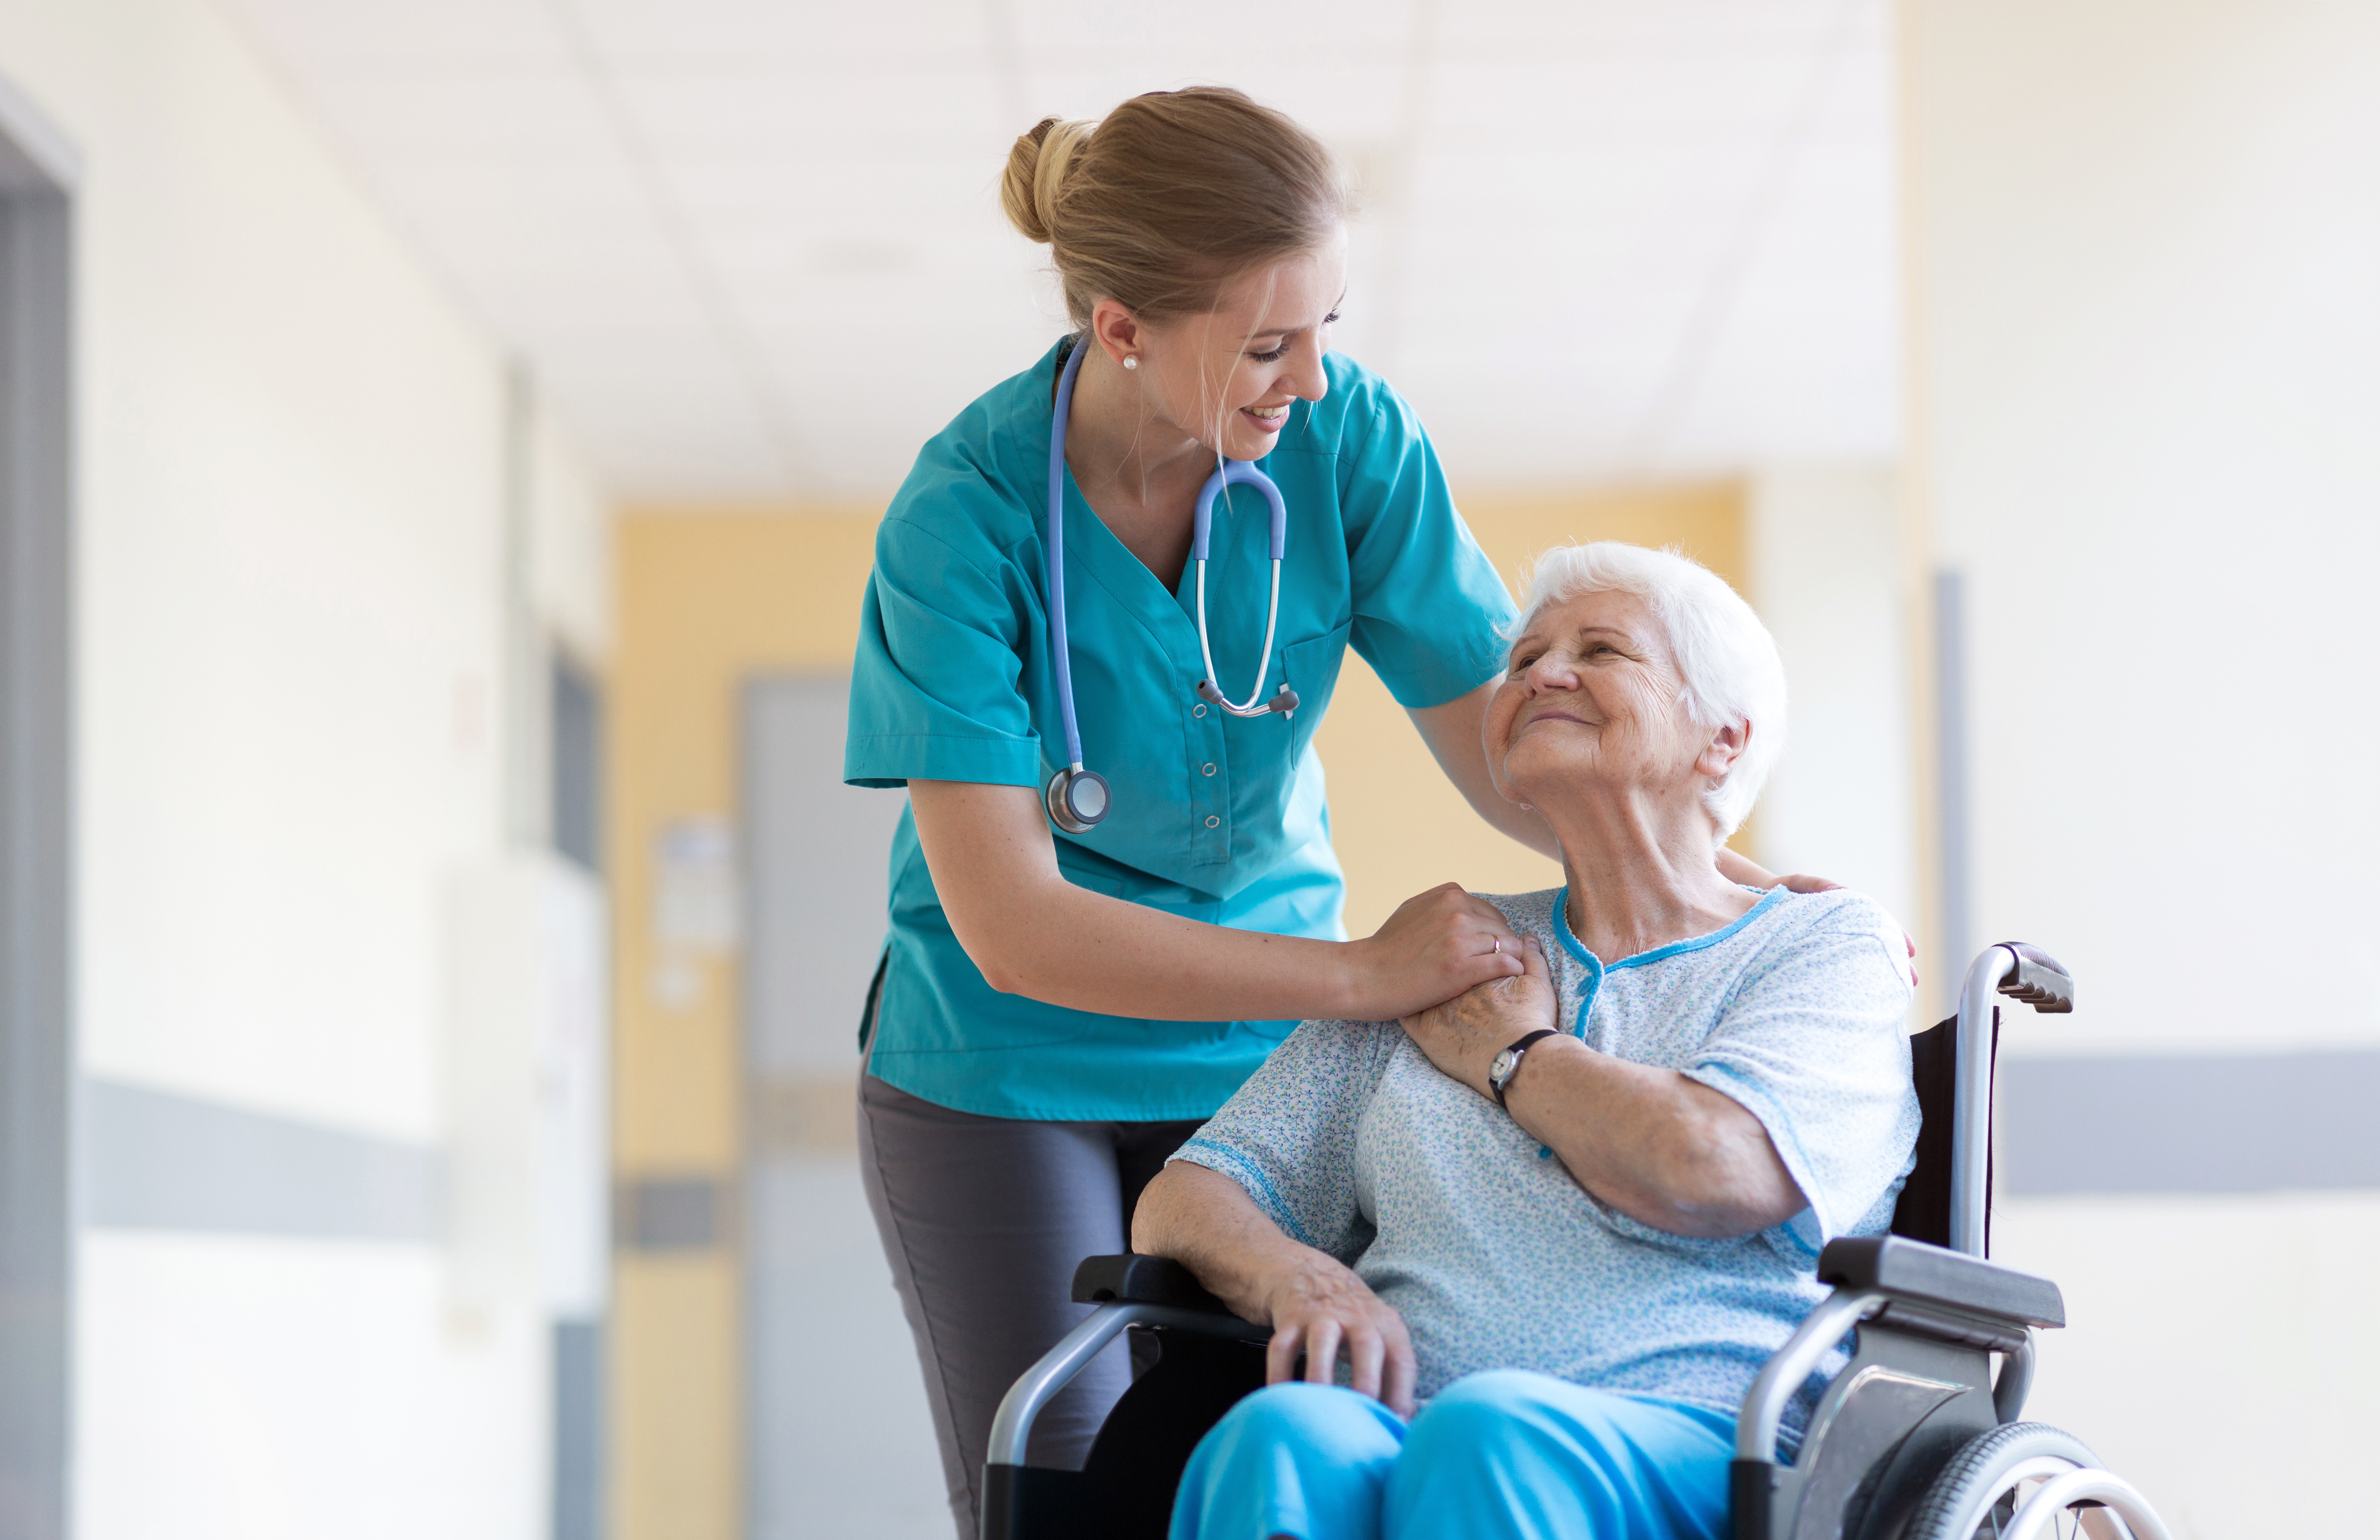 Une formation spécialisée permet de réduire les risques de chute, de complications et d’hospitalisation des patients âgés.